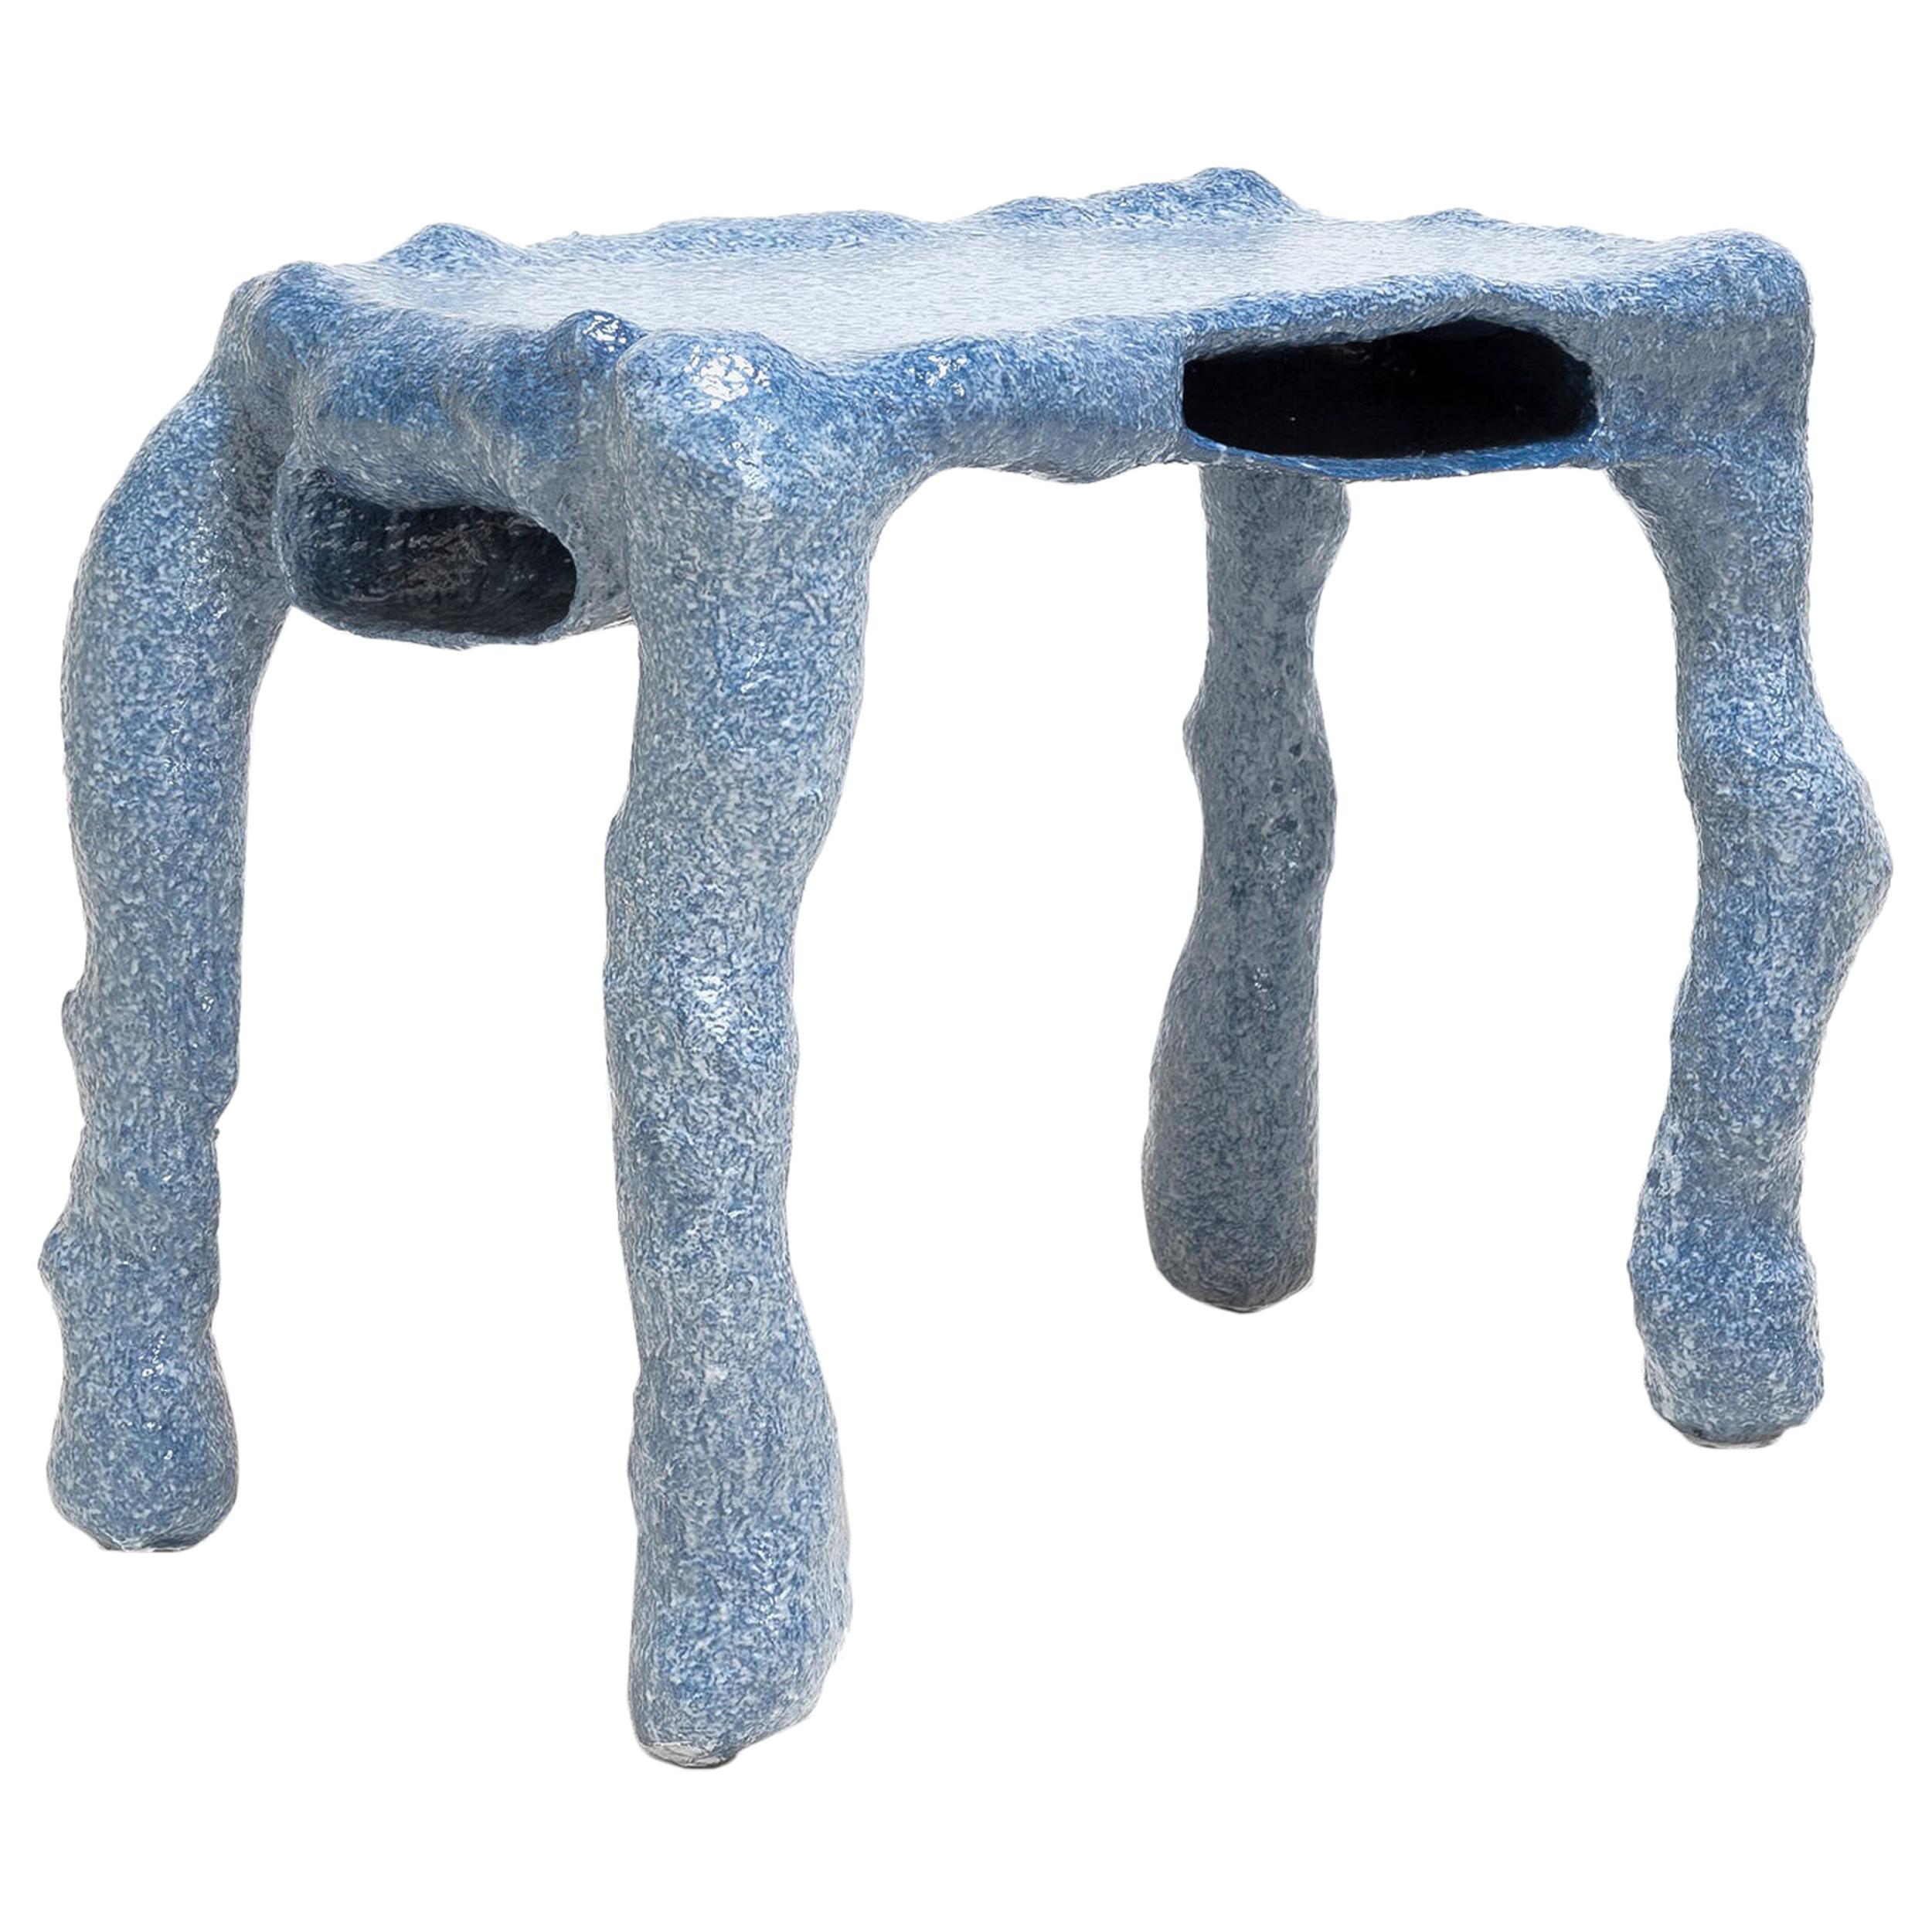 Lukas Saint-Joigny, Contemporary Desk/Table, Blue, Polyurethane, Paris, 2020 For Sale